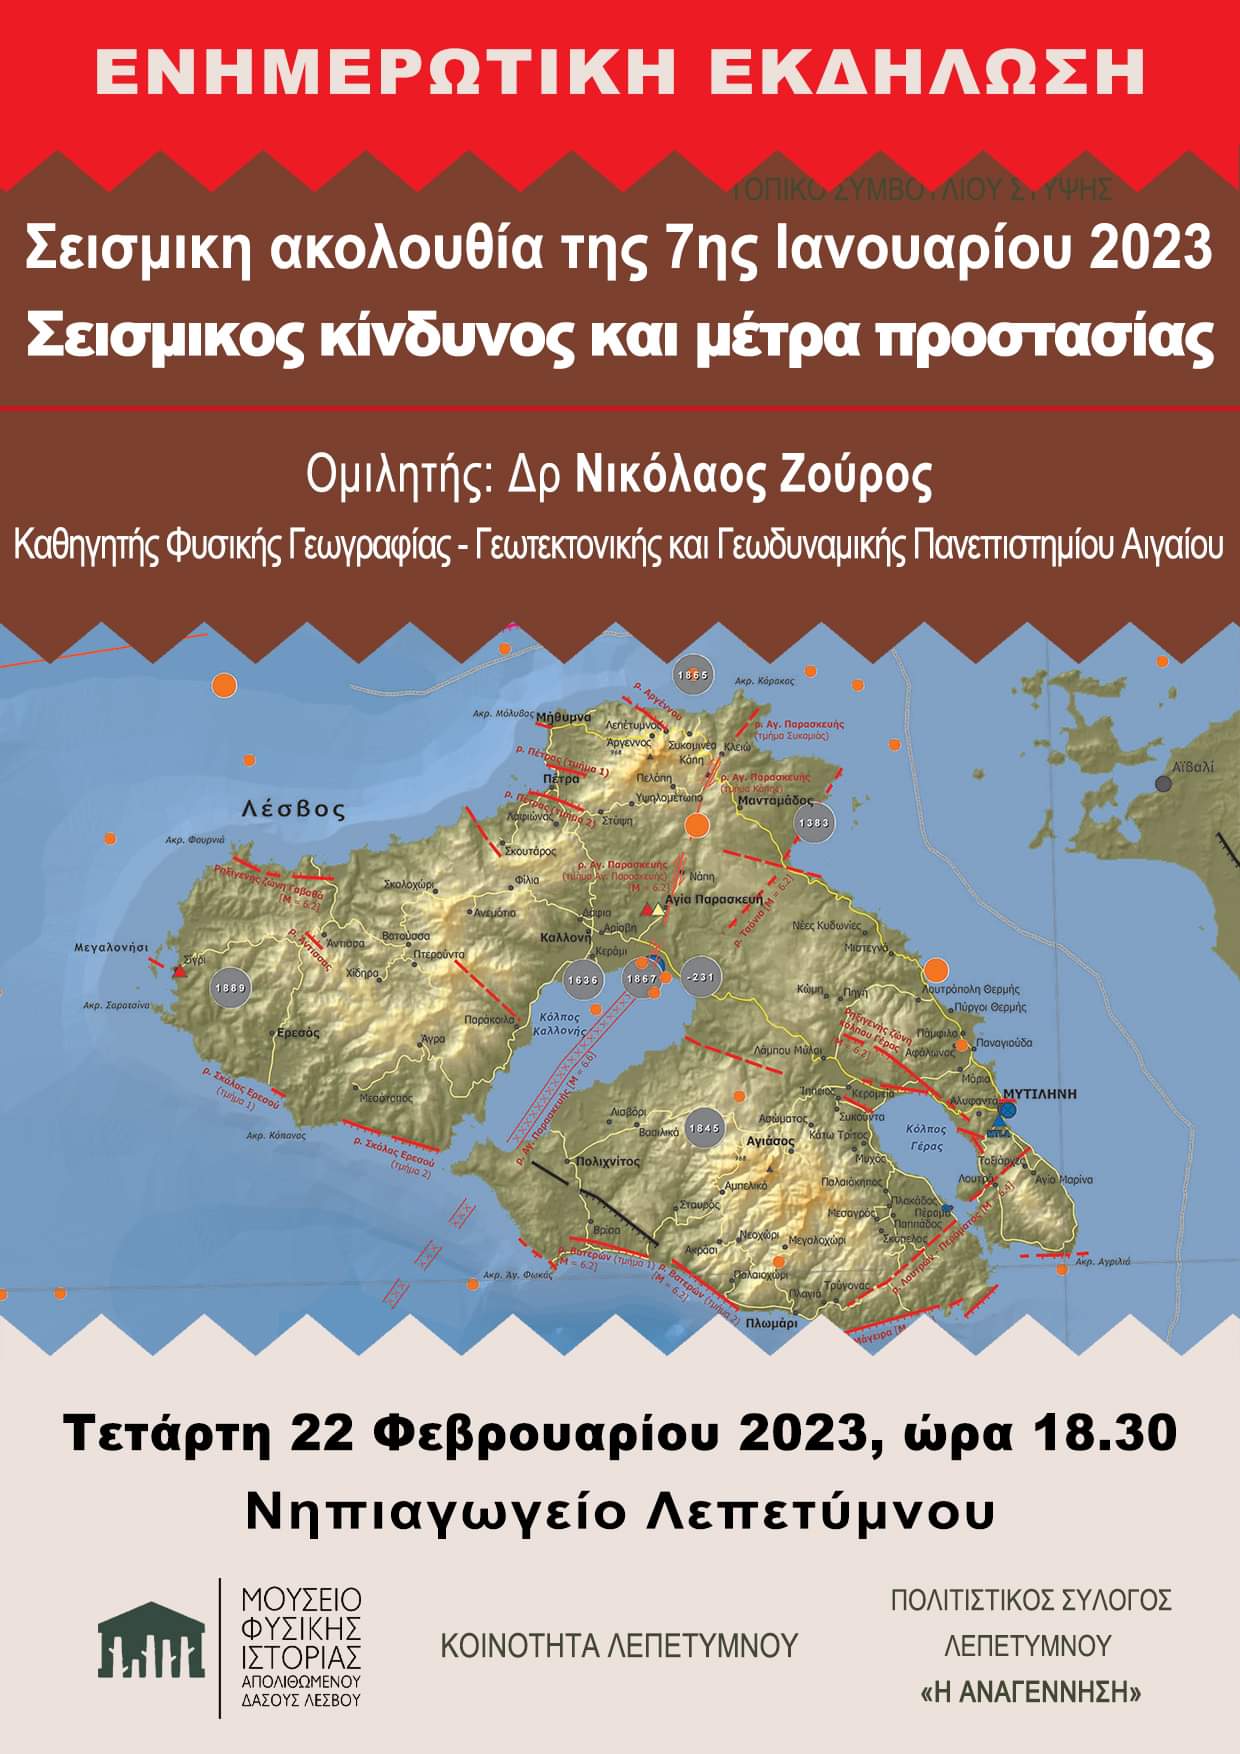 Ενημερωτική εκδήλωση στο Λεπέτυμνο “Η σεισμική ακολουθία της 7ης Ιανουαρίου 2023”